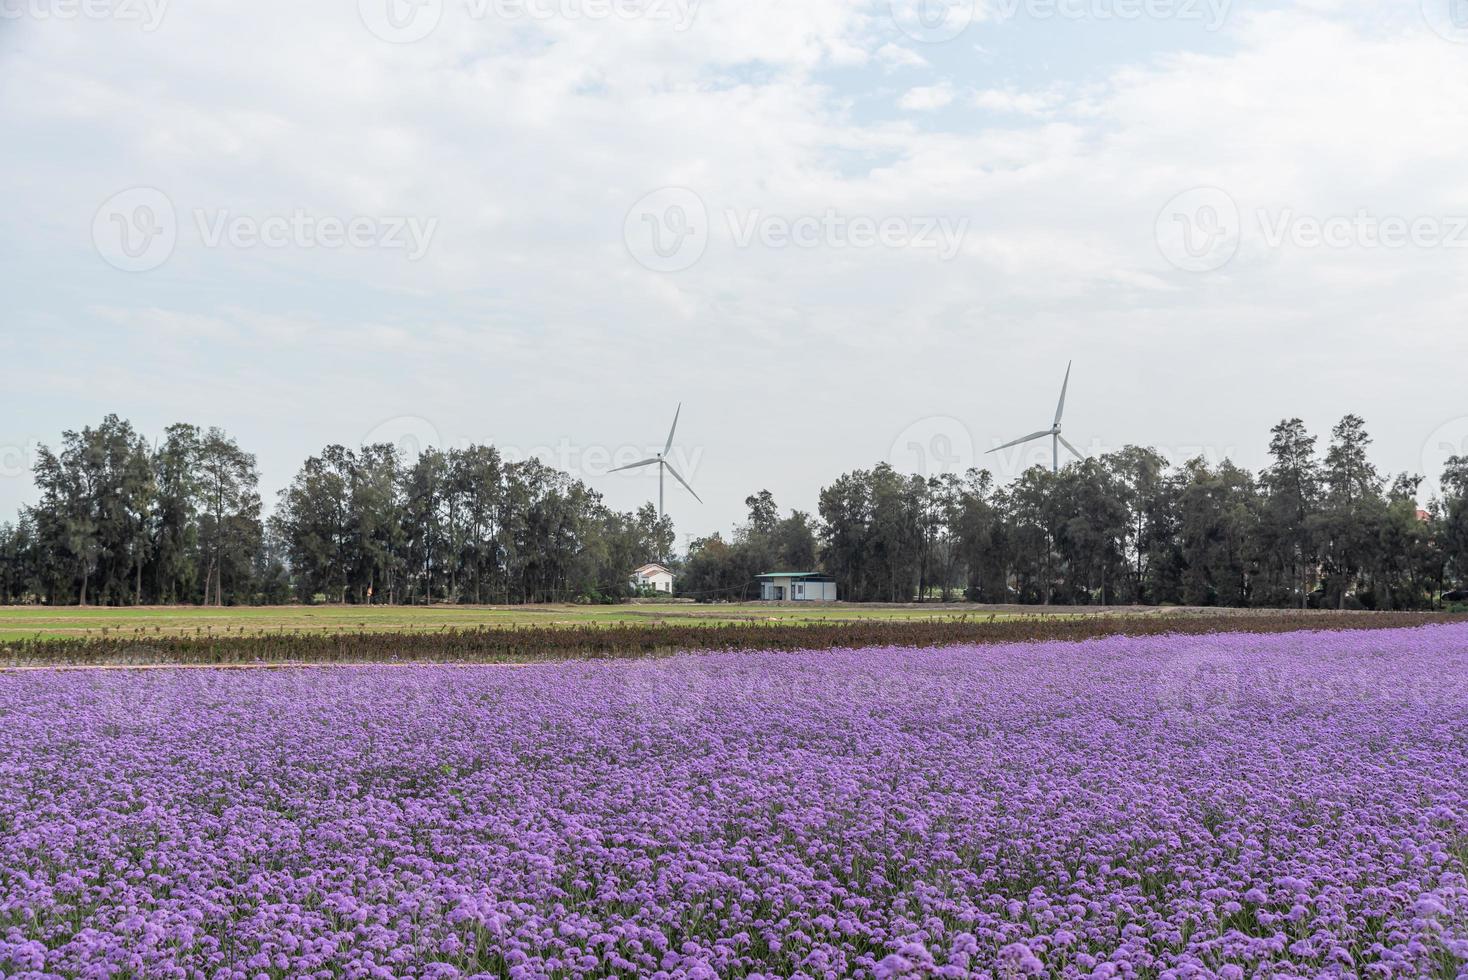 les champs sont couverts de verveine violette et d'éoliennes photo